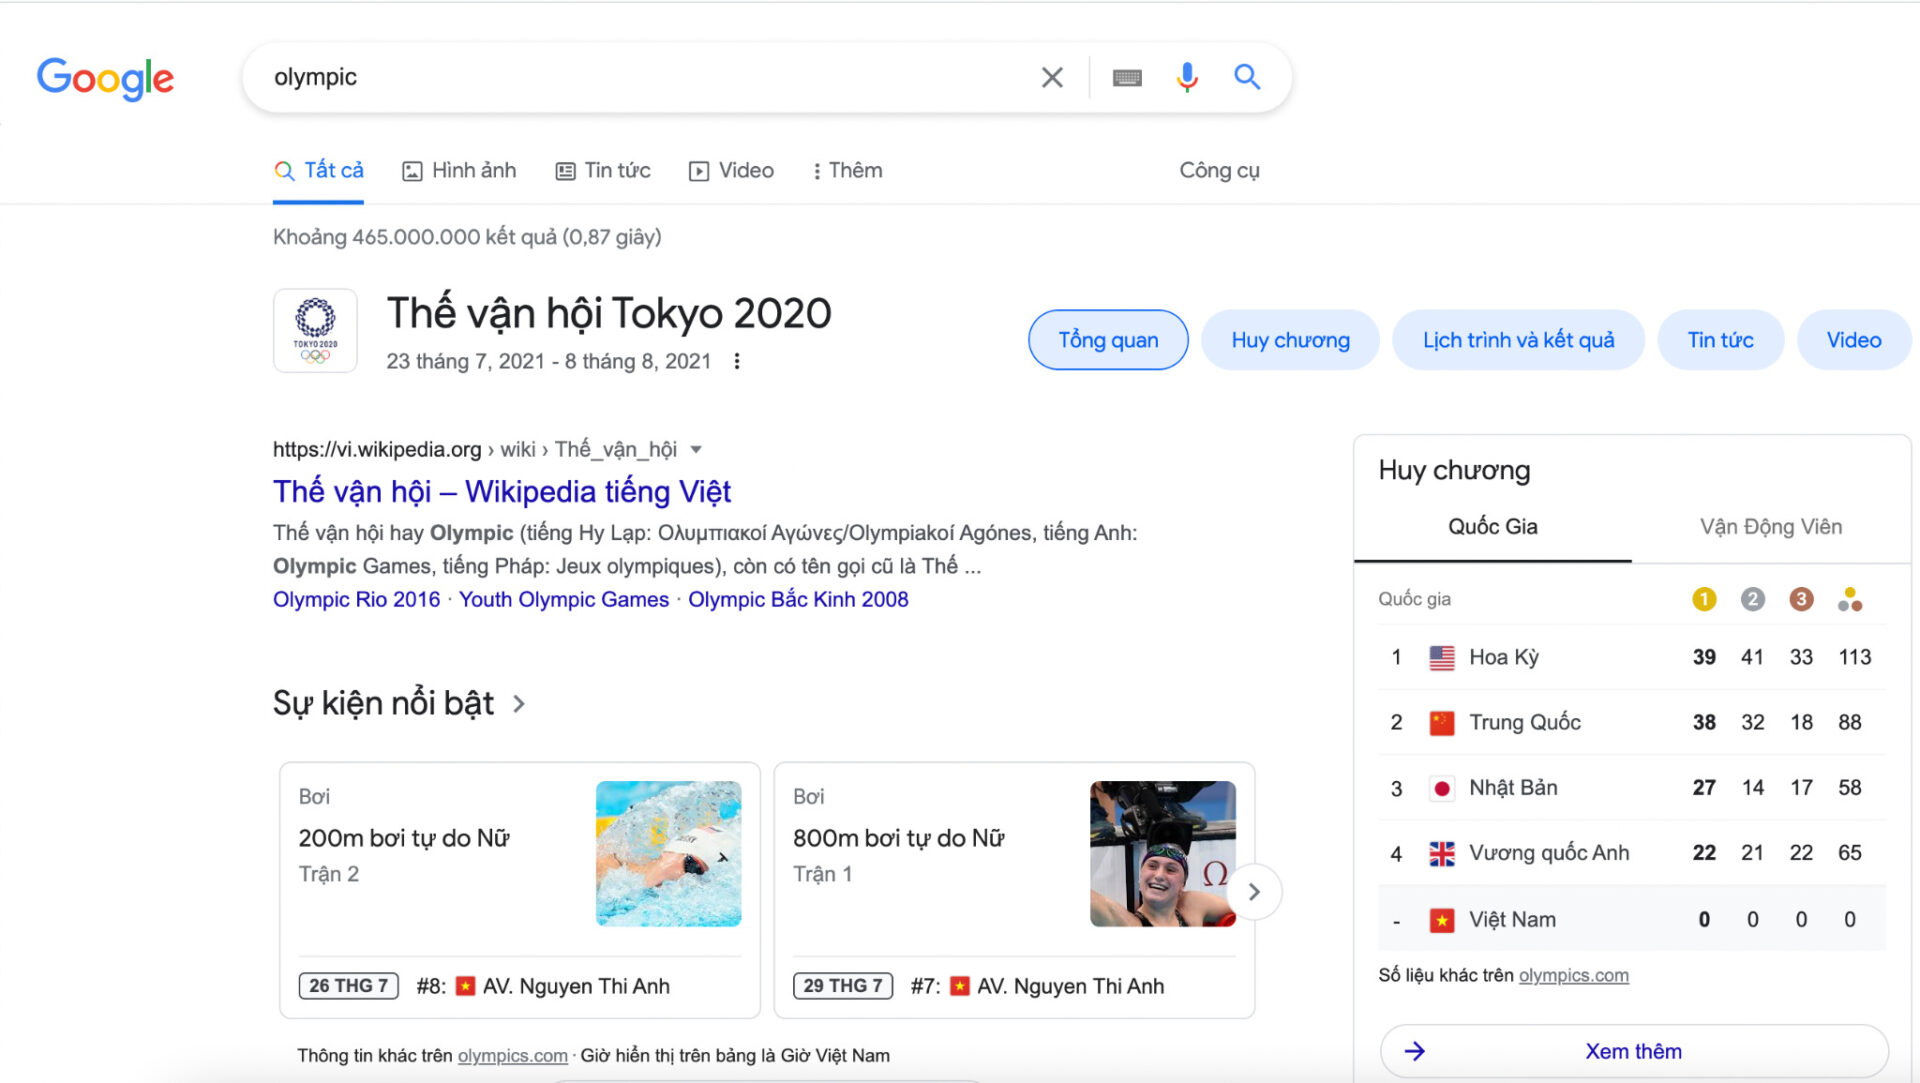 Tuần qua, người Việt quan tâm & tìm kiếm những nội dung gì trên Google?